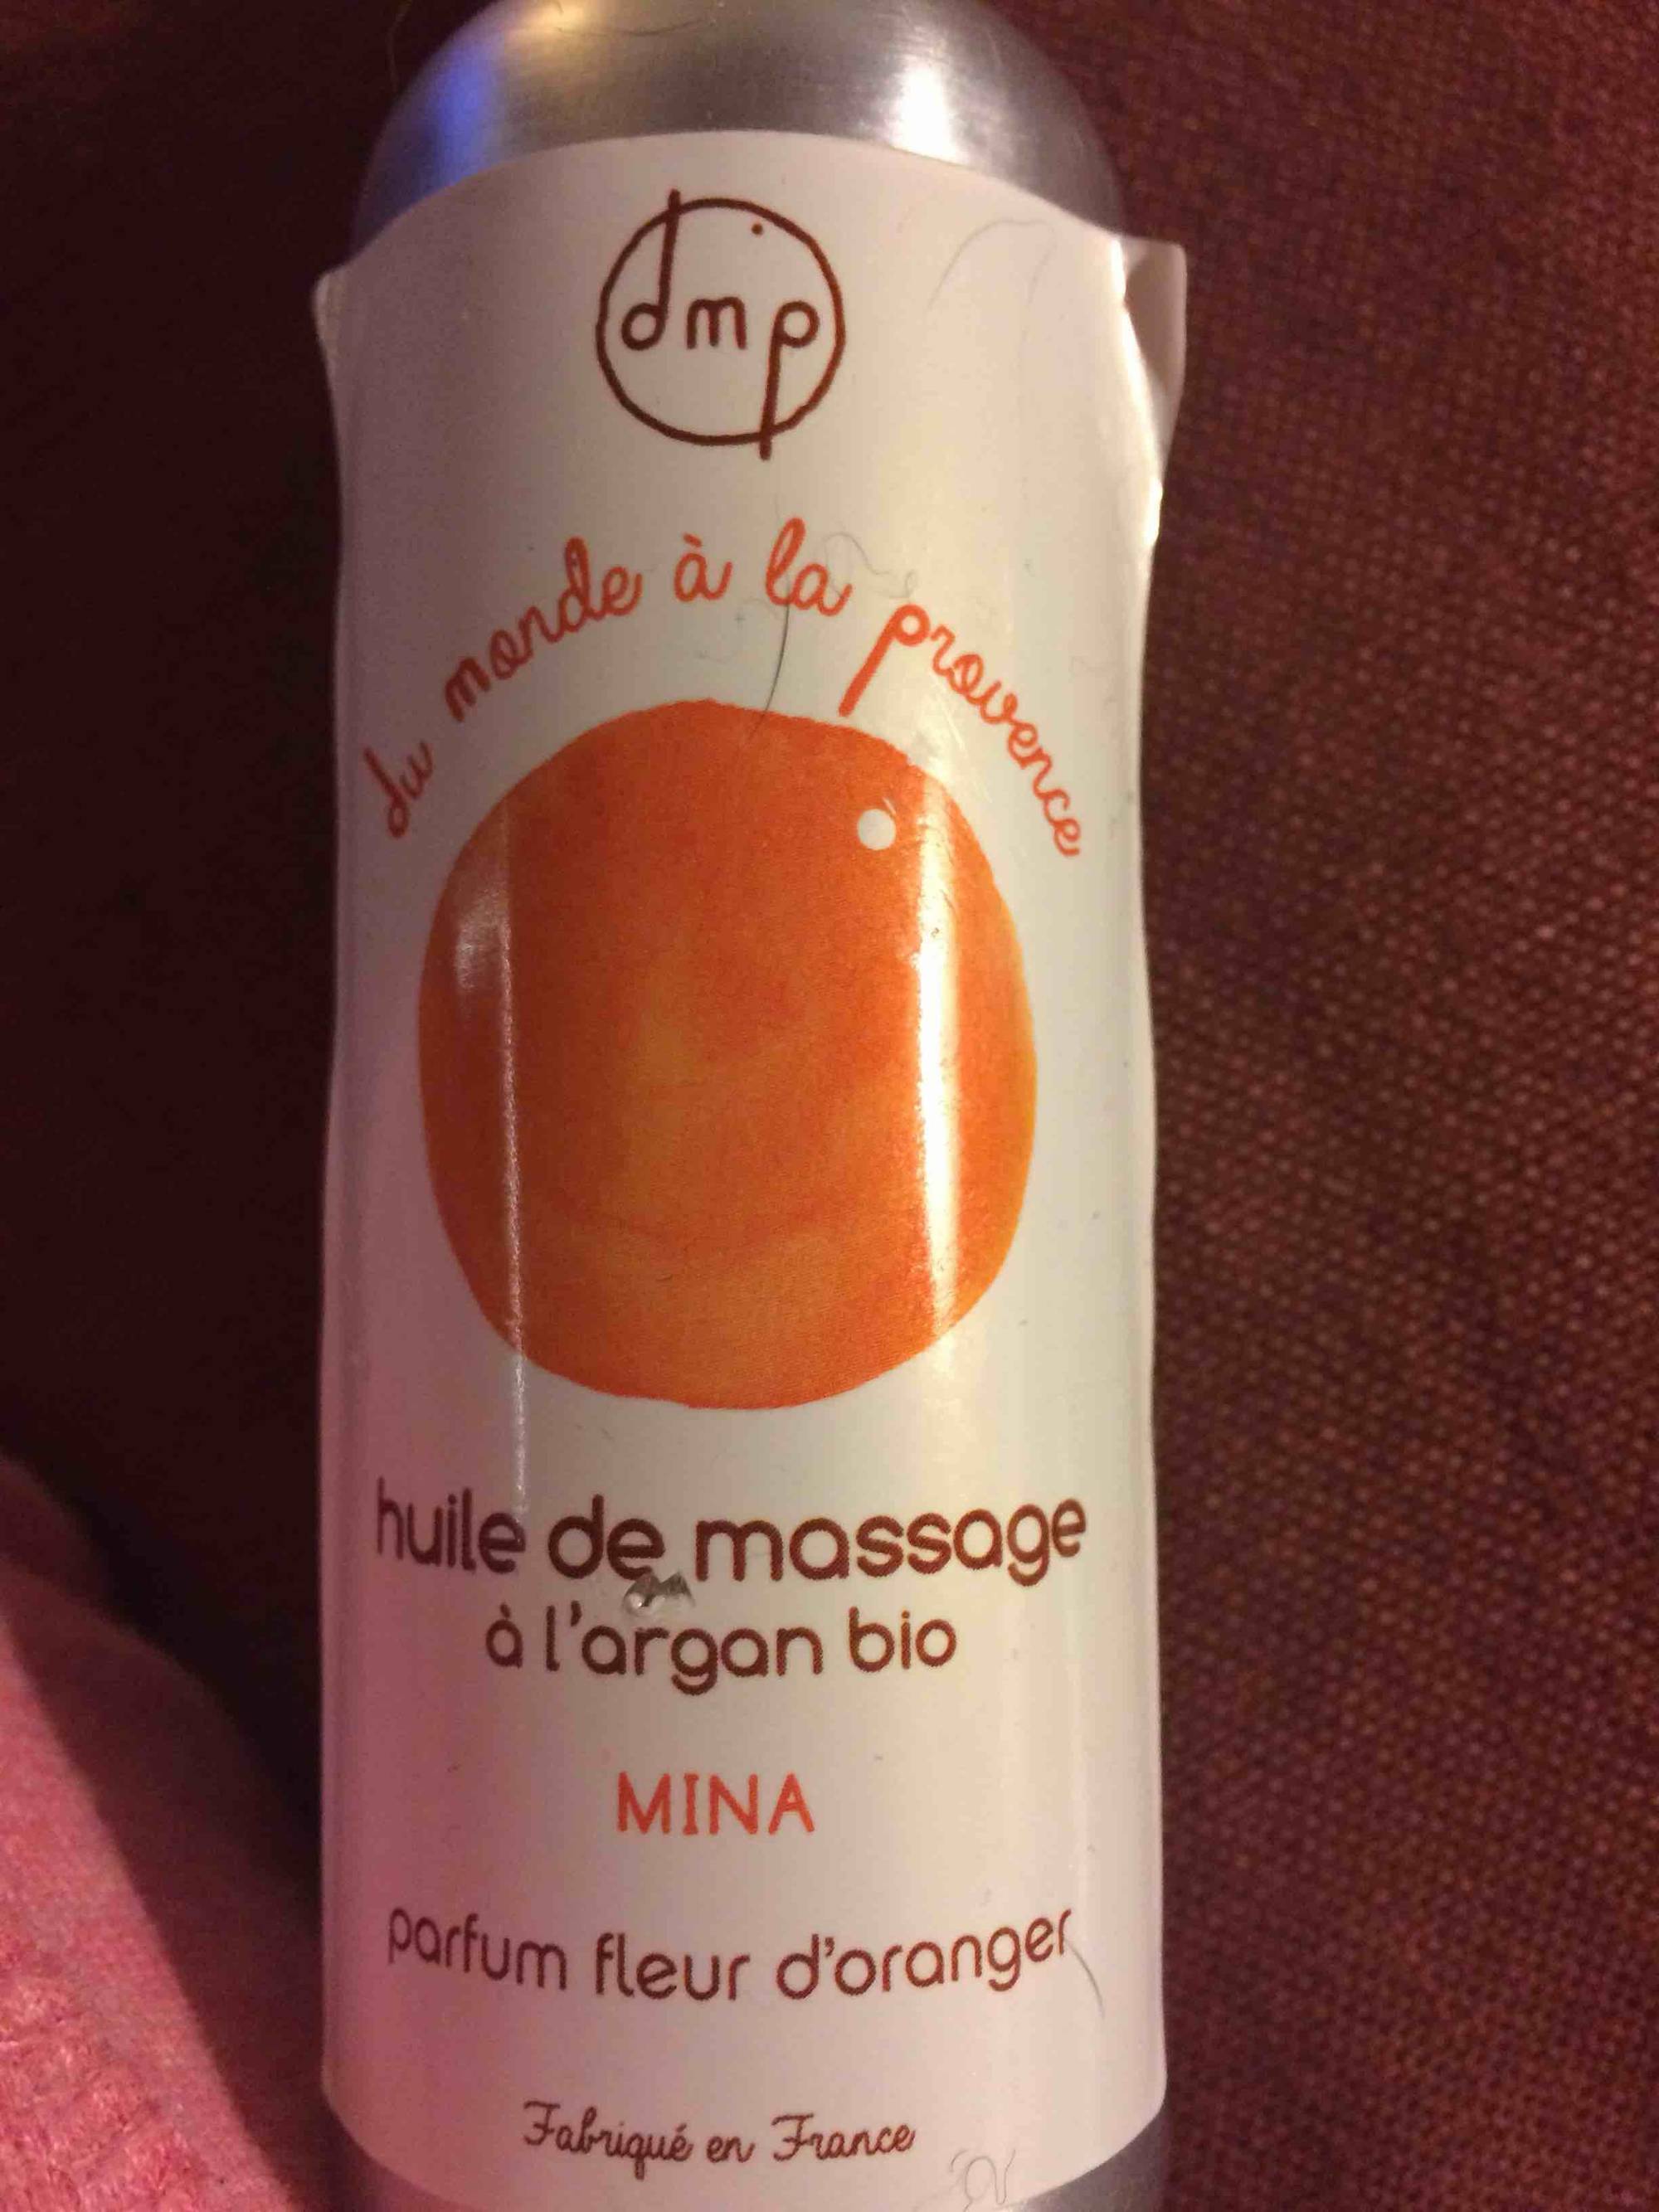 DMP DU MONDE À LA PROVENCE - Mina - Huile de massage à l'argan bio